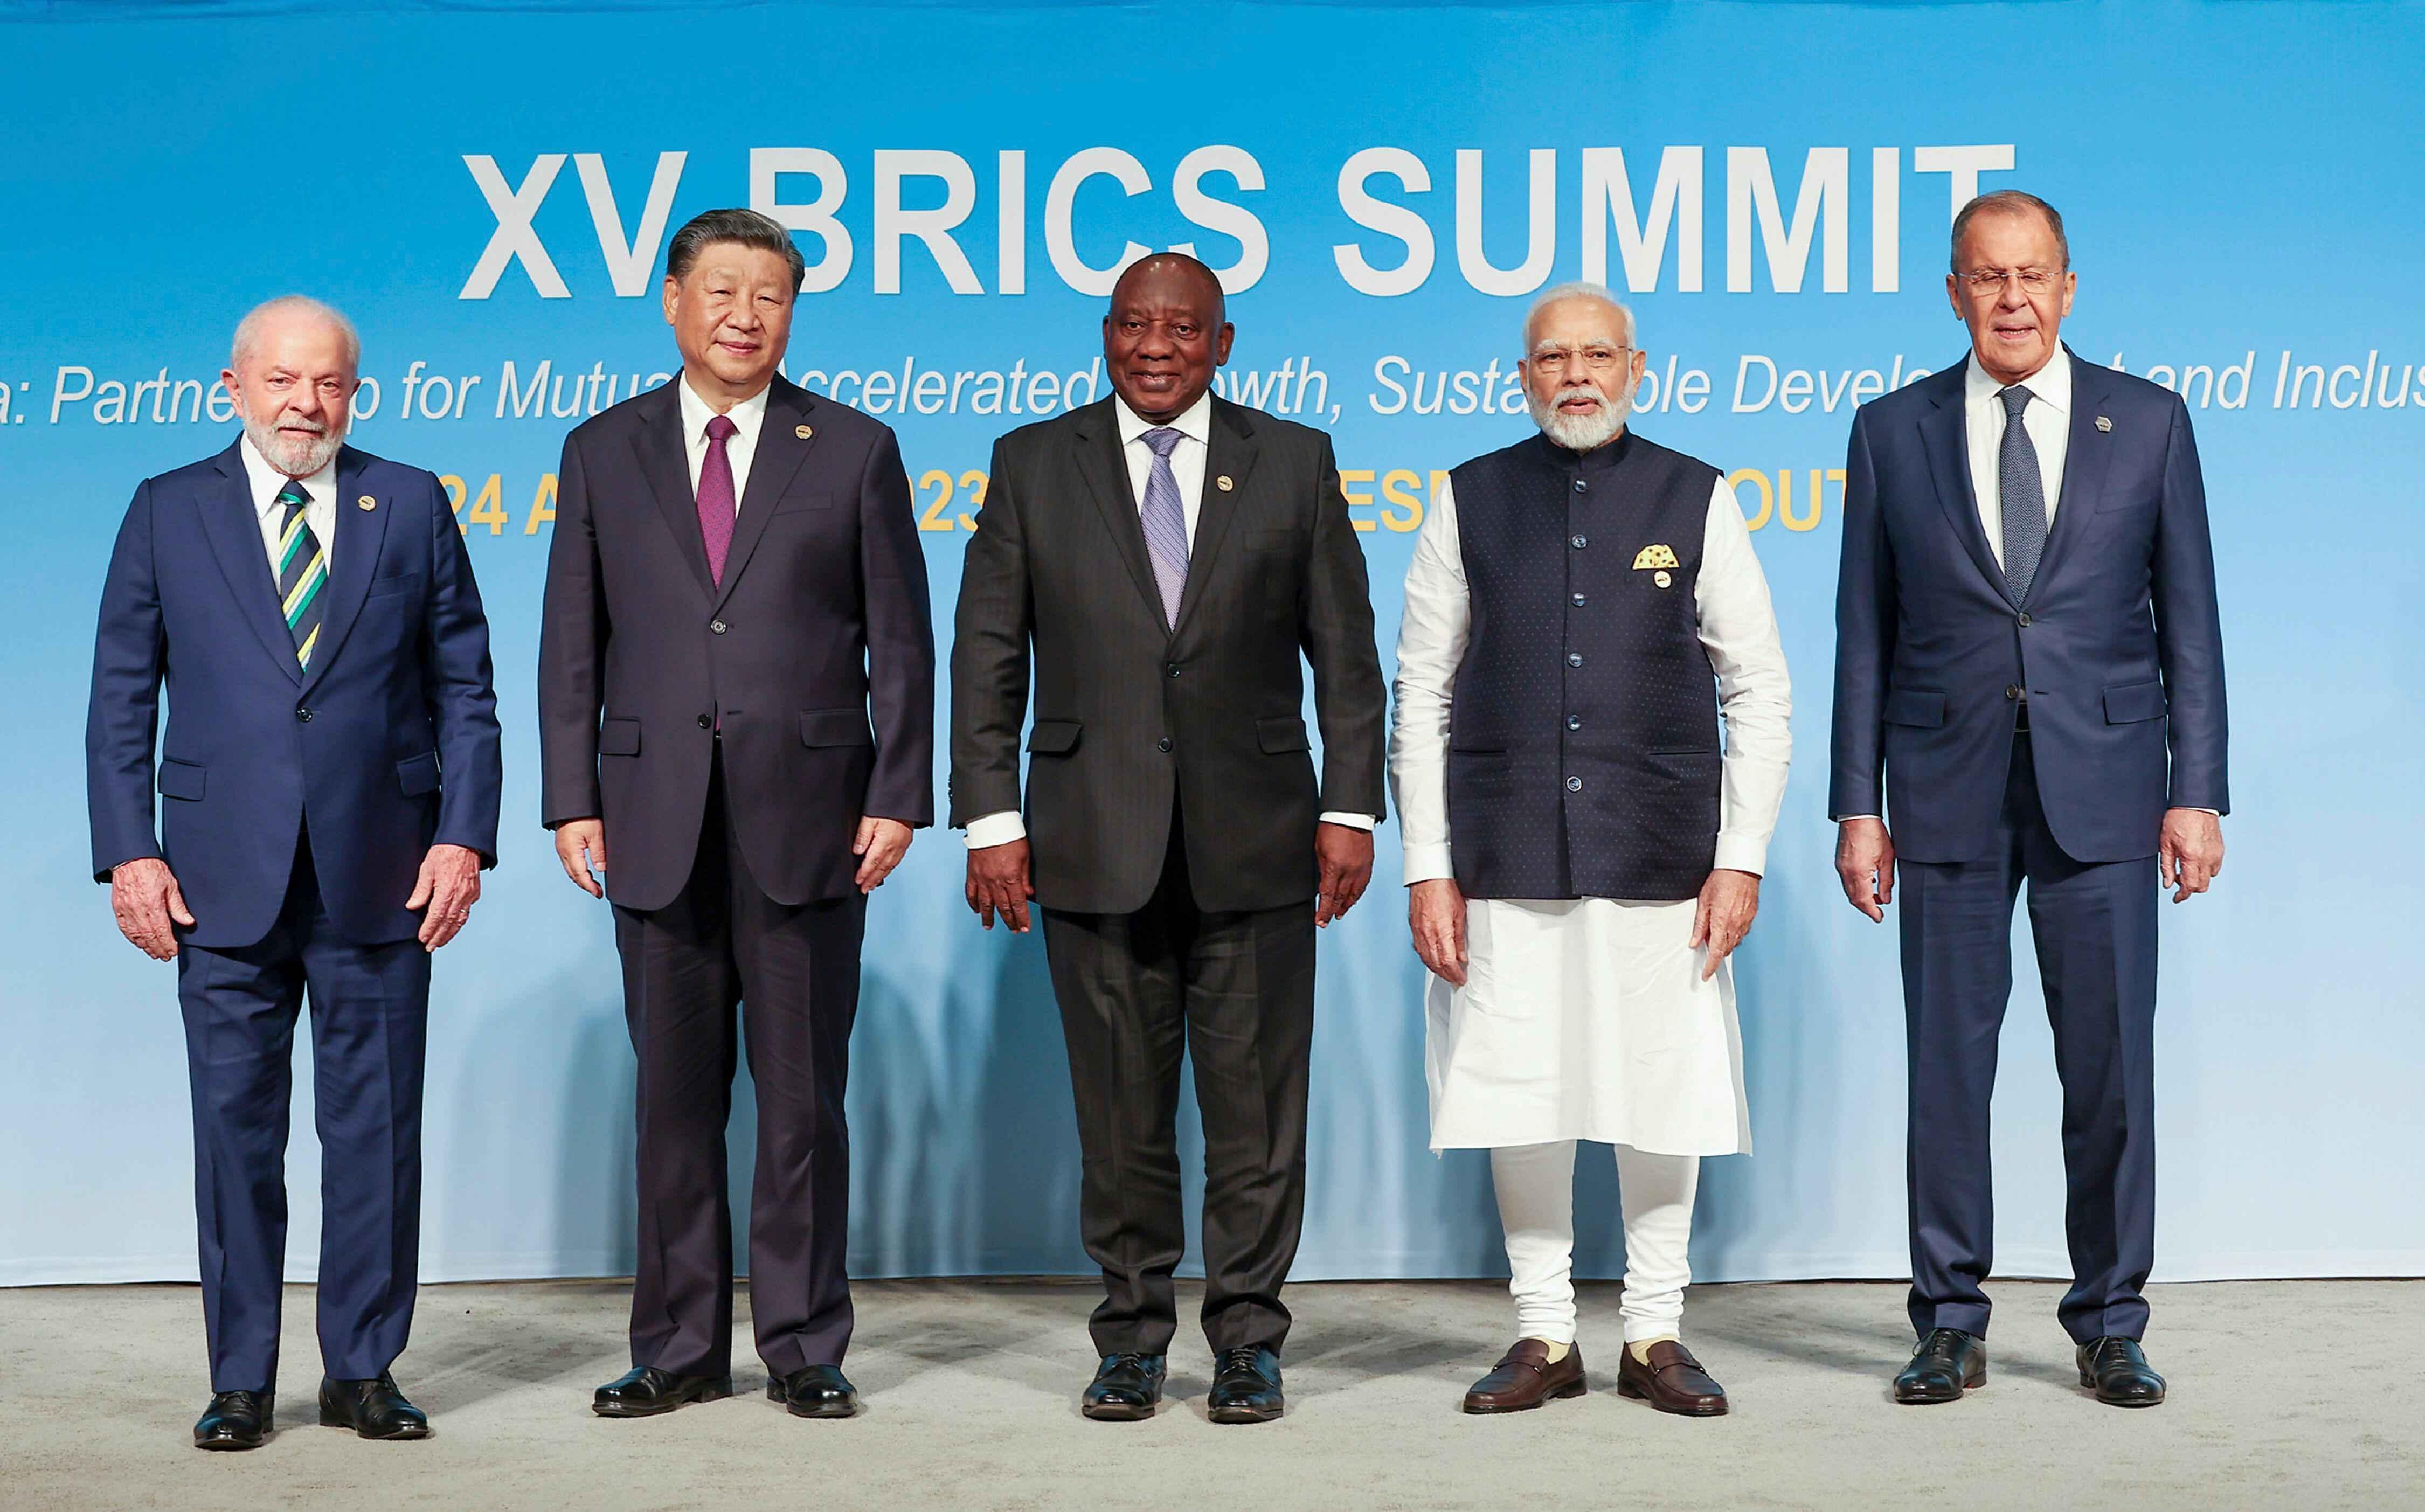 Çin temaslarında gündeme geldi: Türkiye BRICS'e katılacak mı?